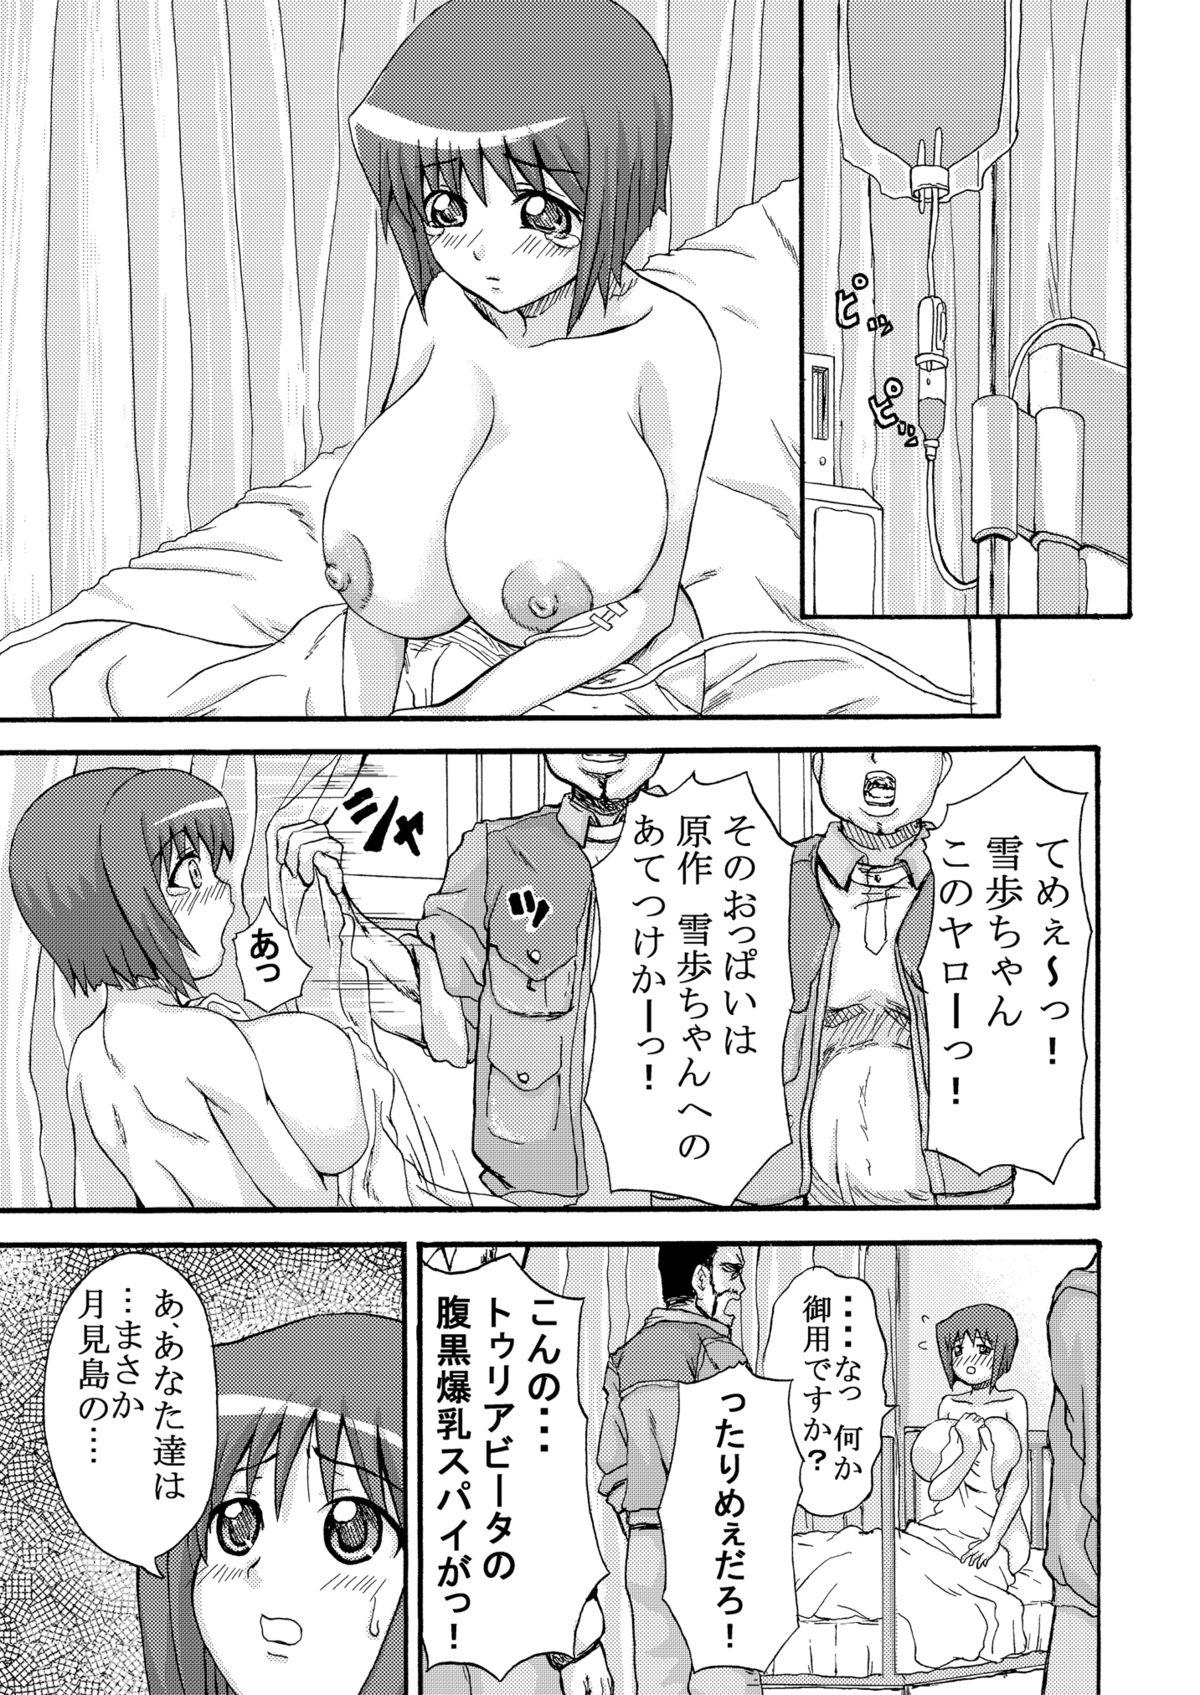 Banging Yukiho's punishment! - The idolmaster Sola - Page 2